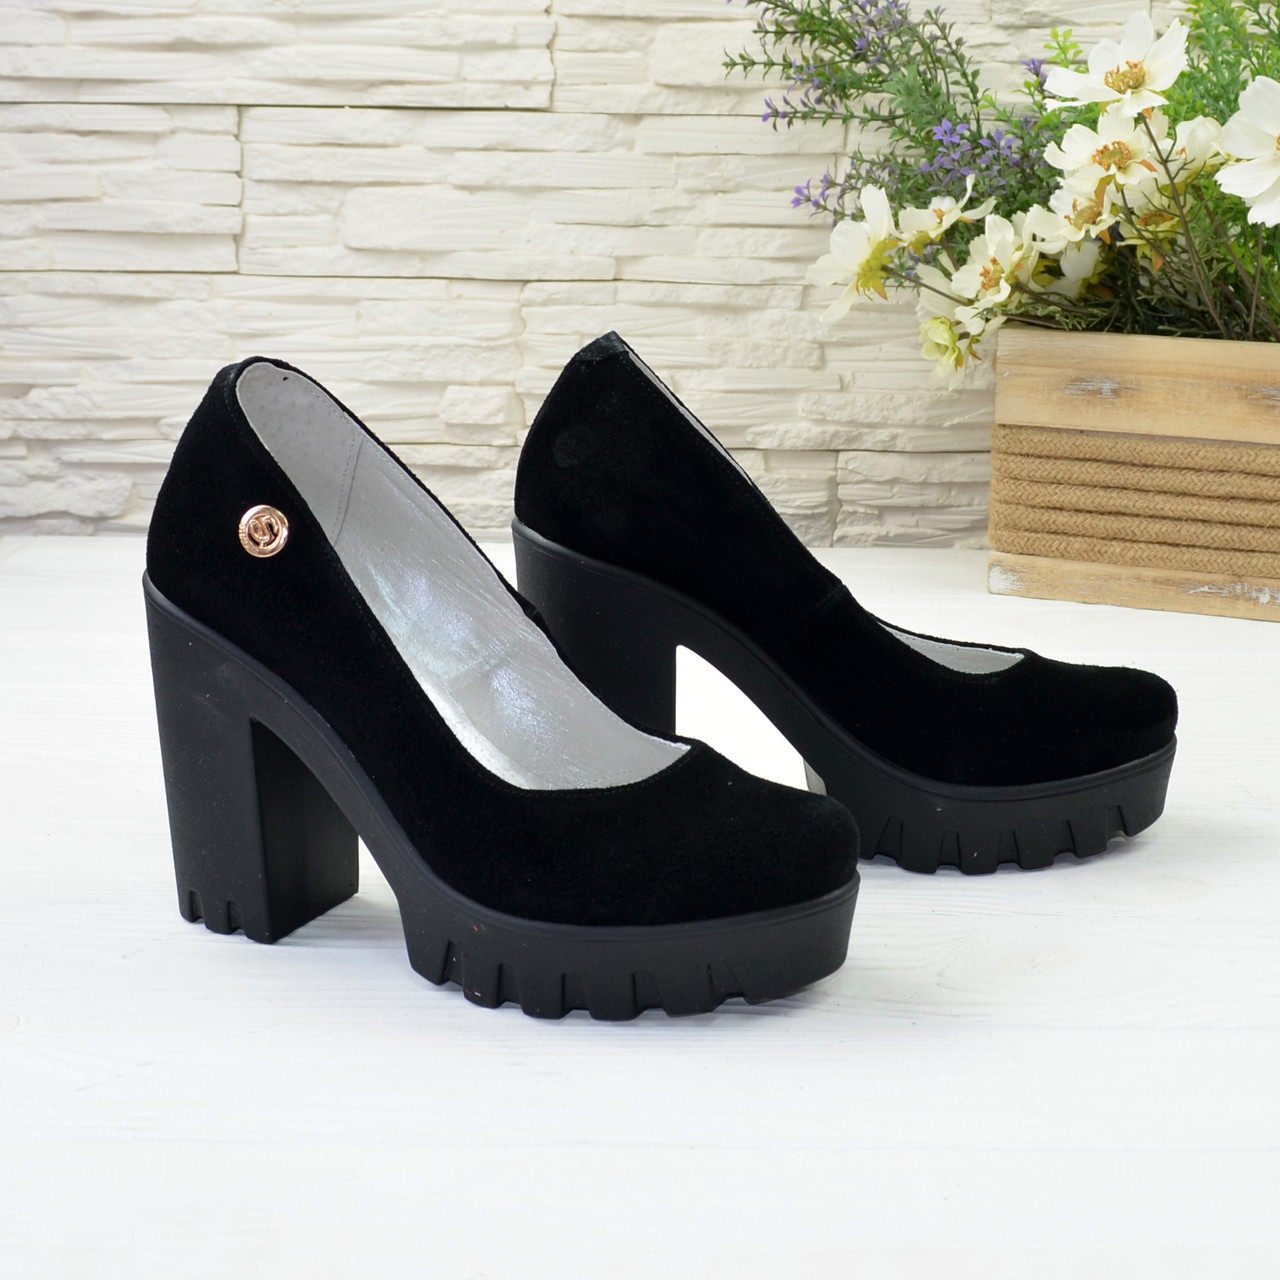 Женские черные замшевые туфли на высоком каблуке, декорированы фурнитурой, фото 2